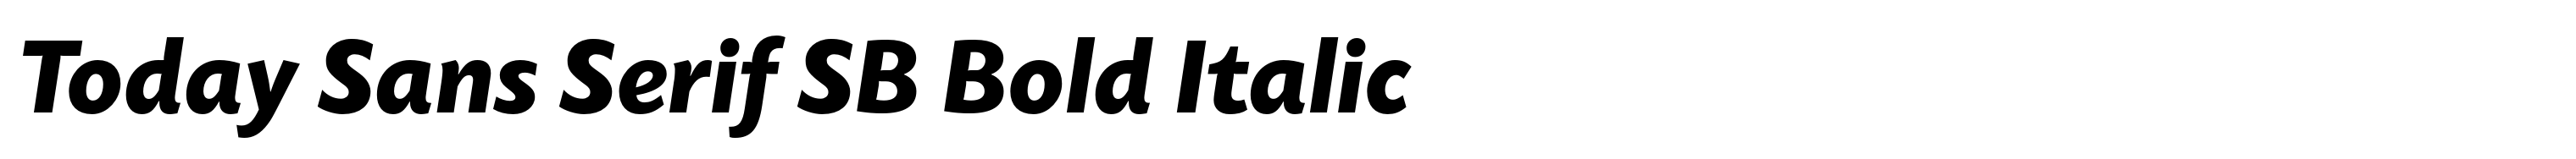 Today Sans Serif SB Bold Italic